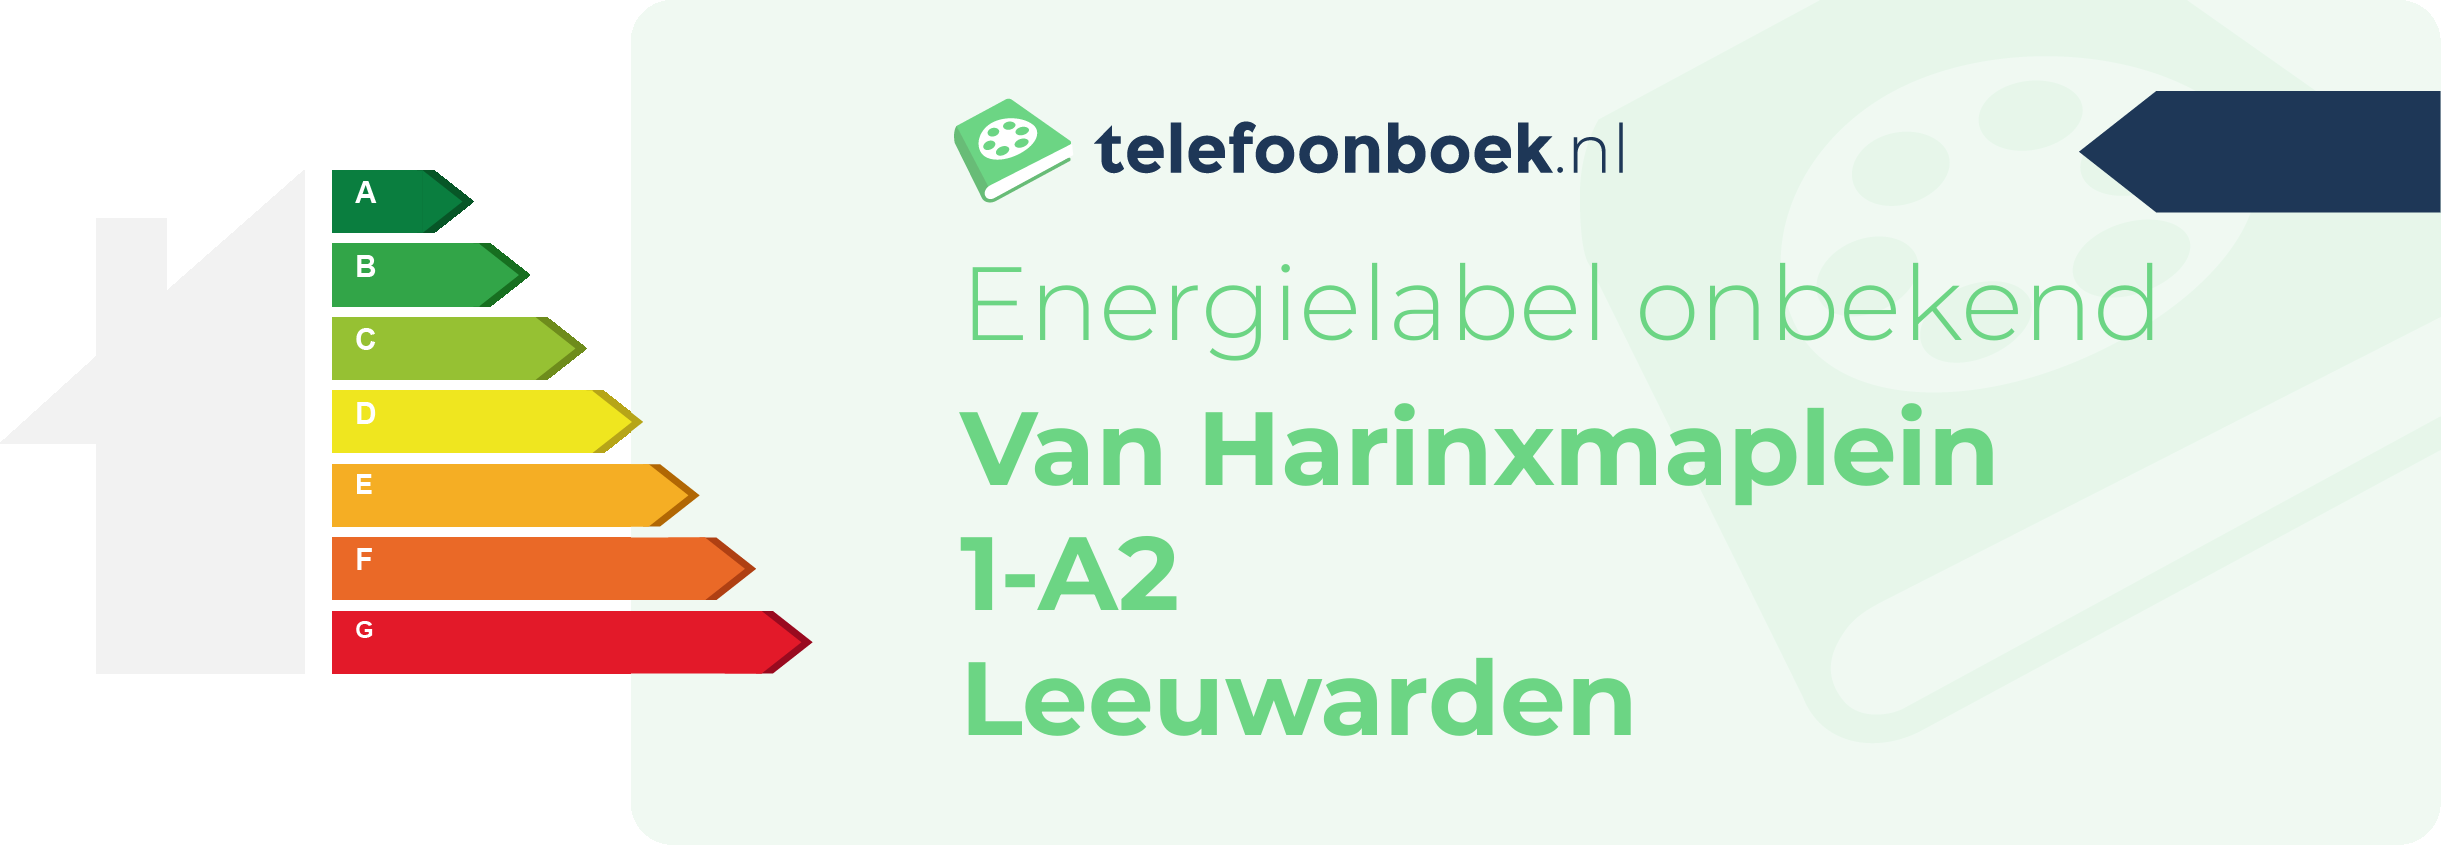 Energielabel Van Harinxmaplein 1-A2 Leeuwarden